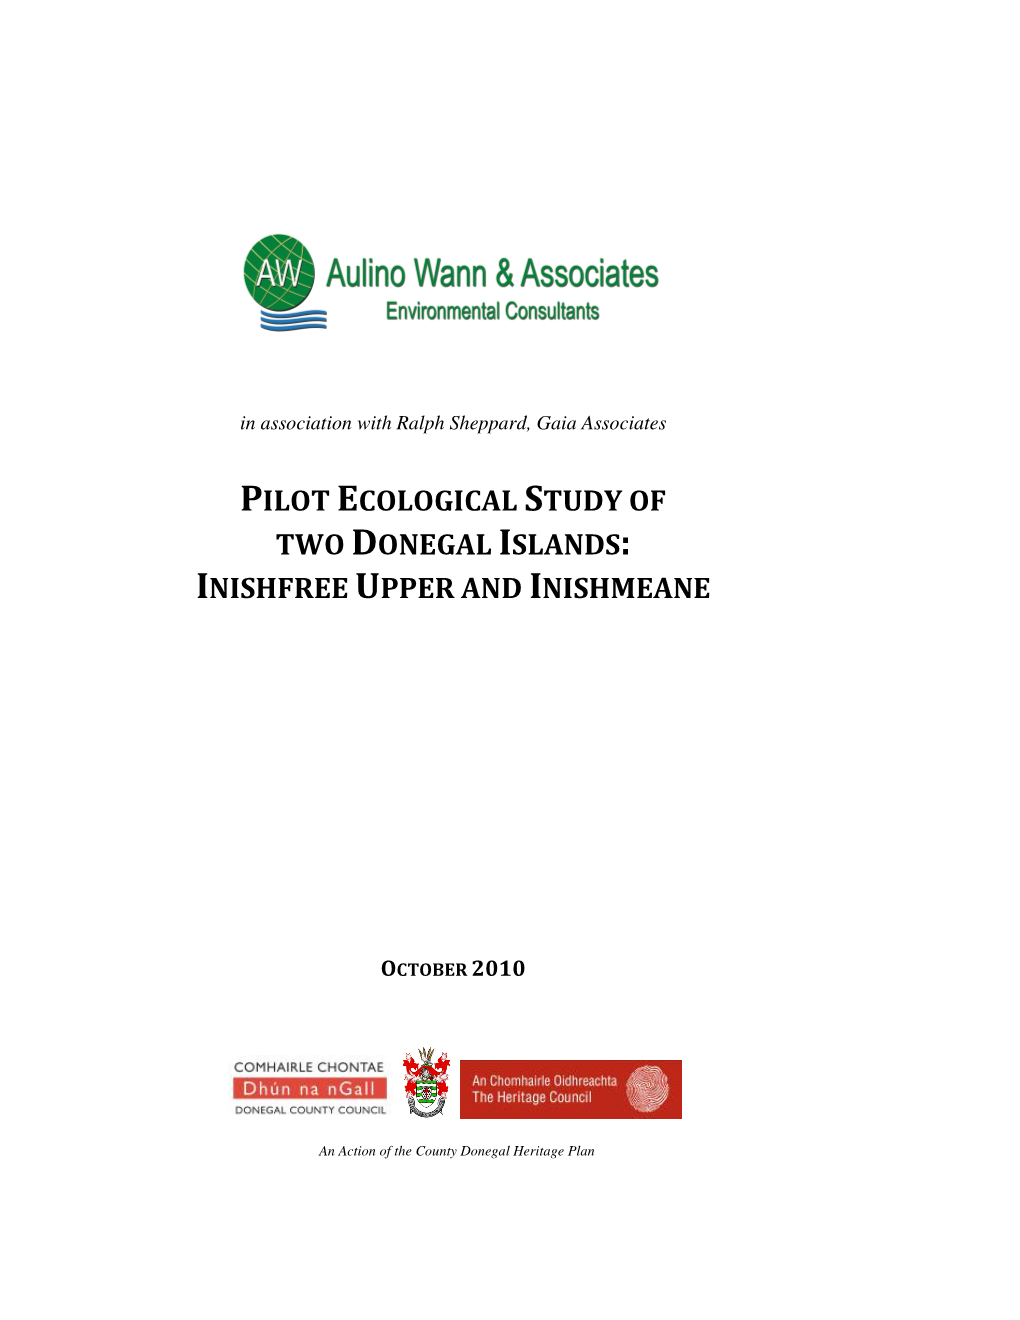 Ecological Study of Inishfree Upper & Inishmeane